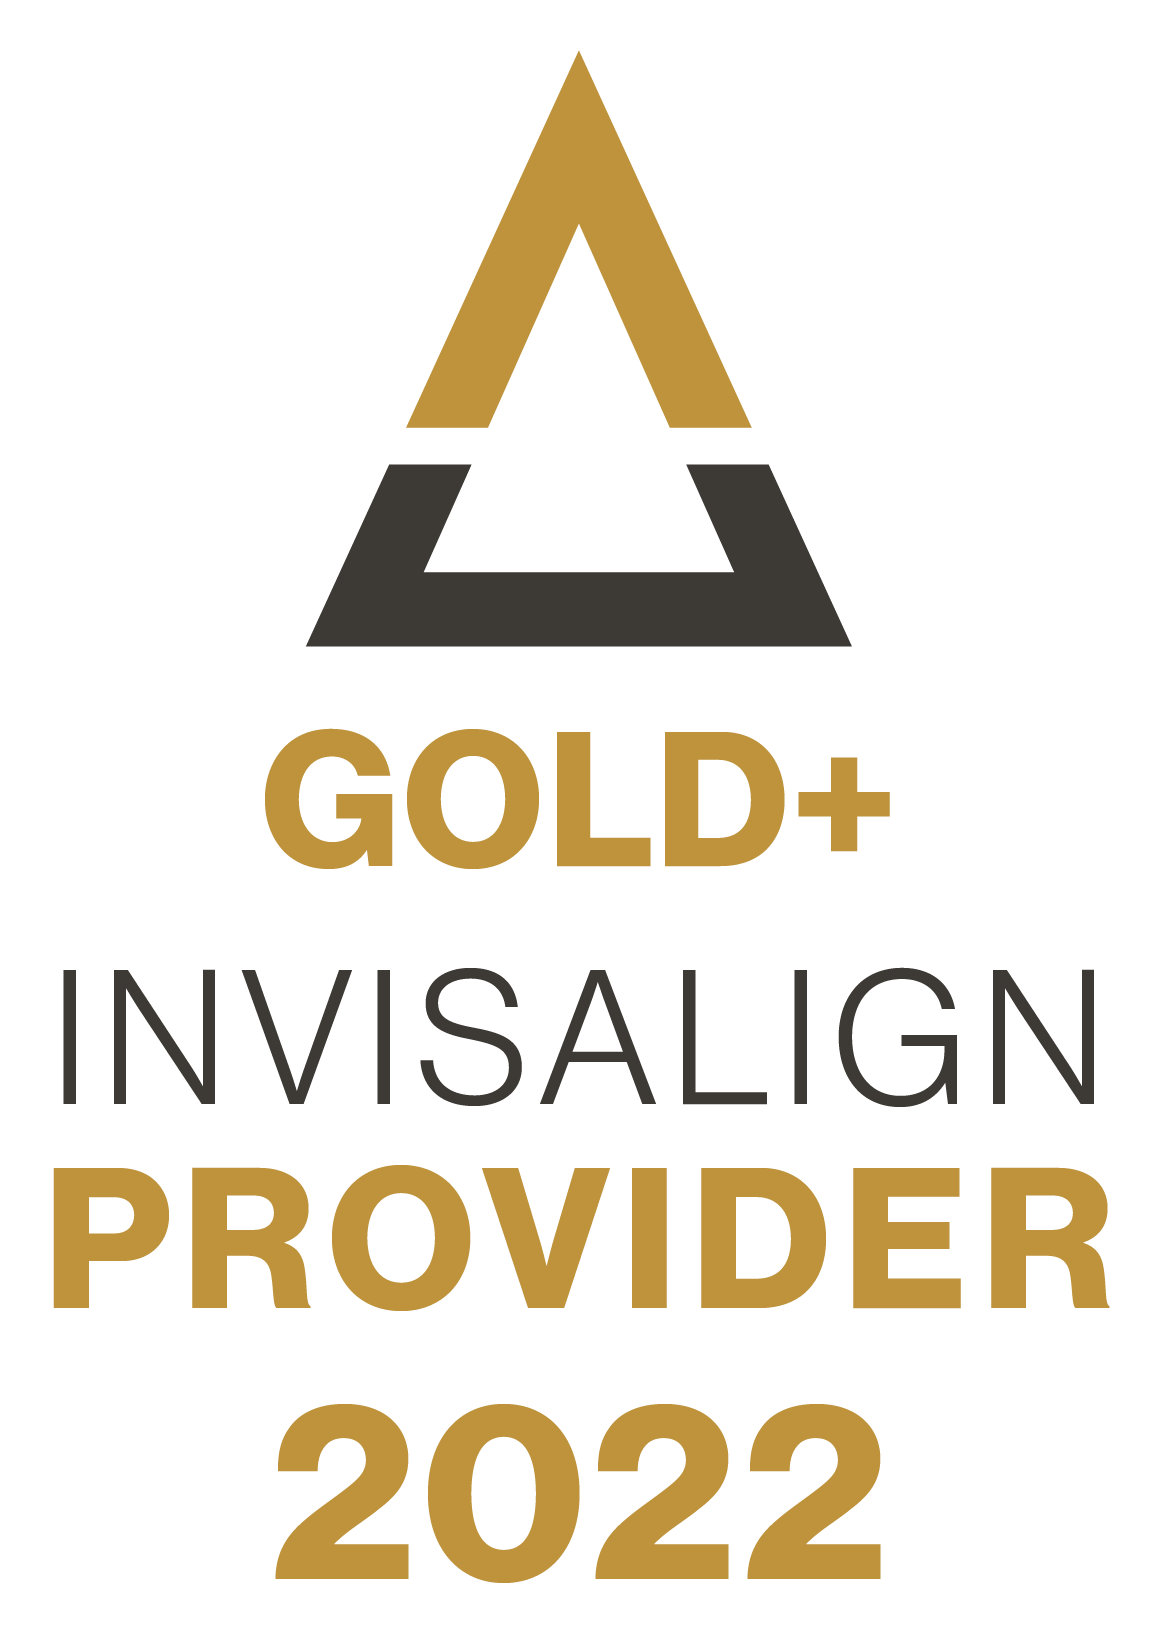 Gold+ Invisalign provider